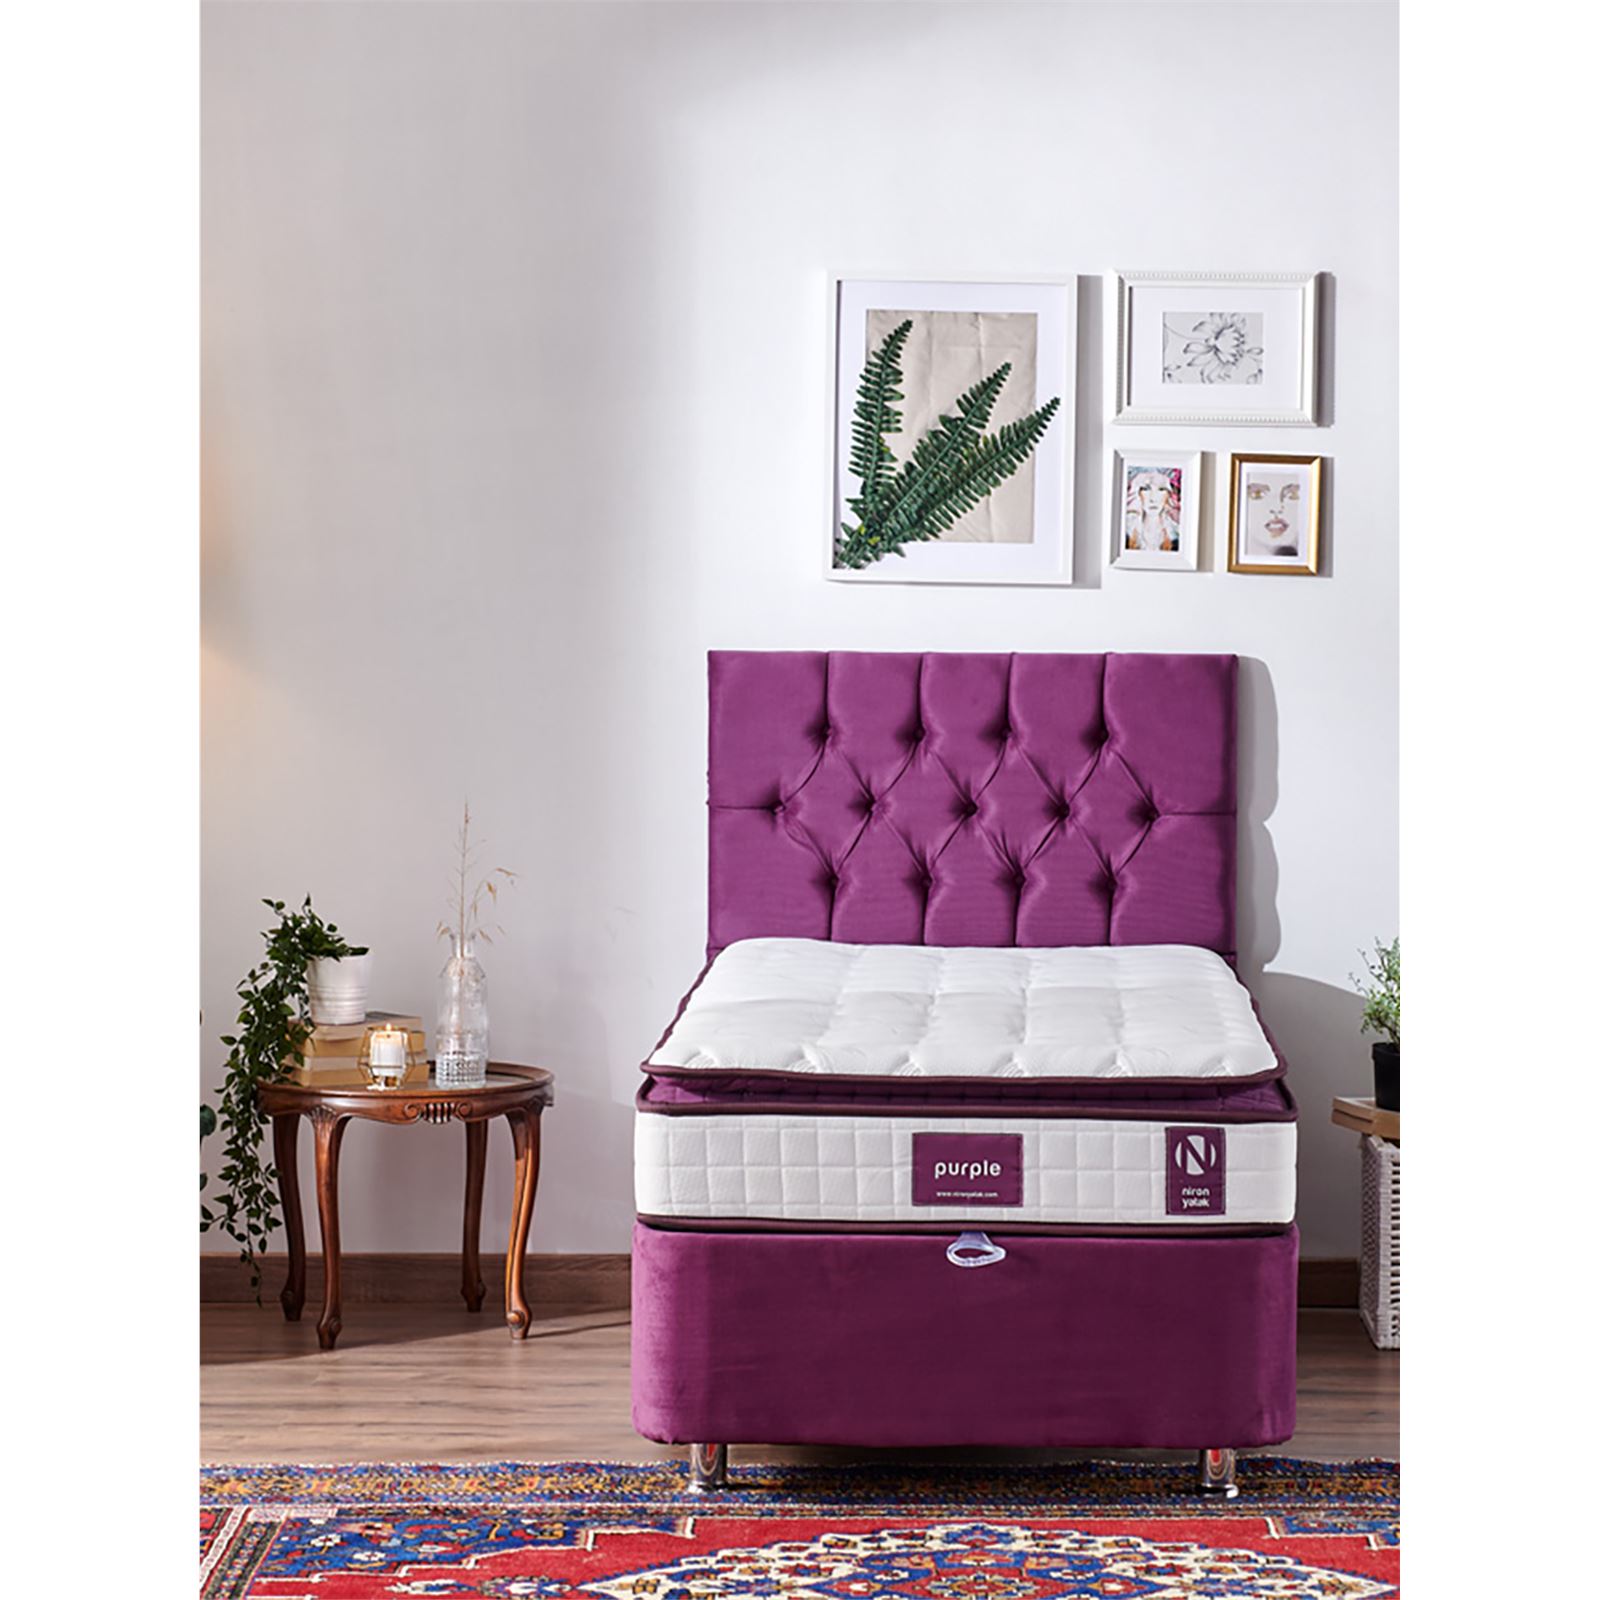 Niron Purple Yatak Seti 100x200 cm Tek Kişilik Yatak Baza Başlık Takımı Orta Sert Yatak Baza ve Başlığı Mor